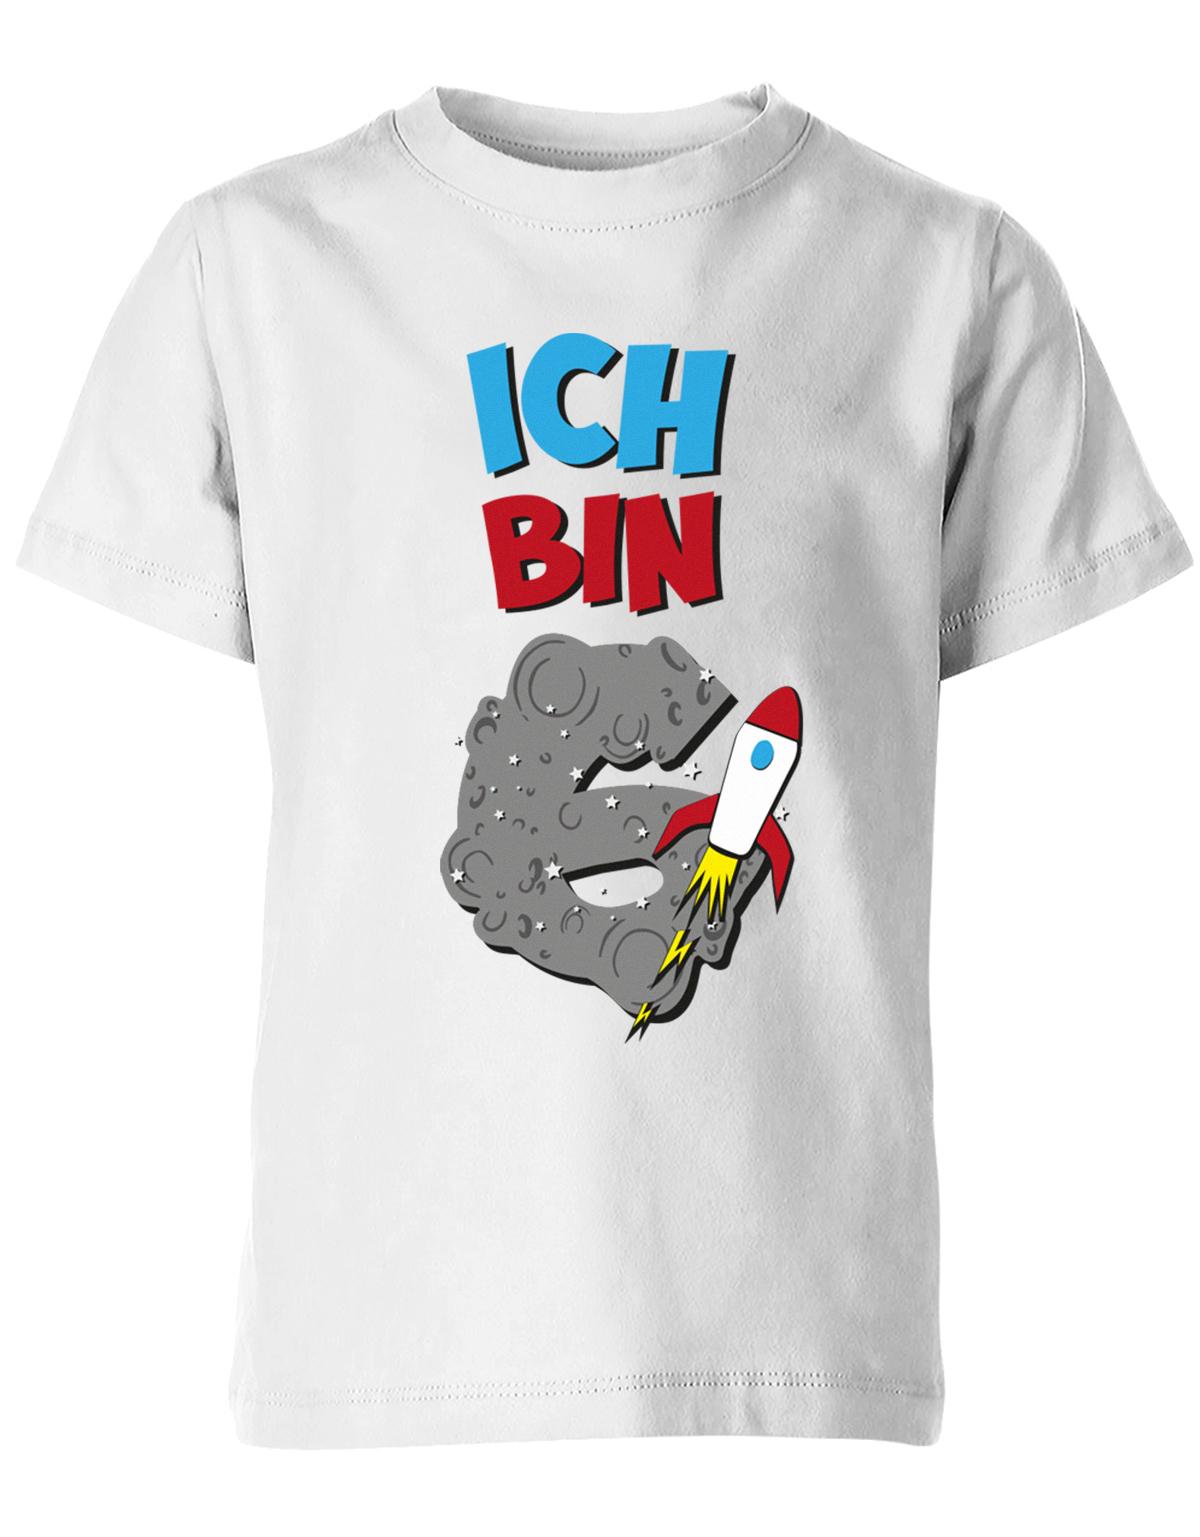 ich-bin-6-weltraum-rakete-planet-geburtstag-kinder-shirt-weiss